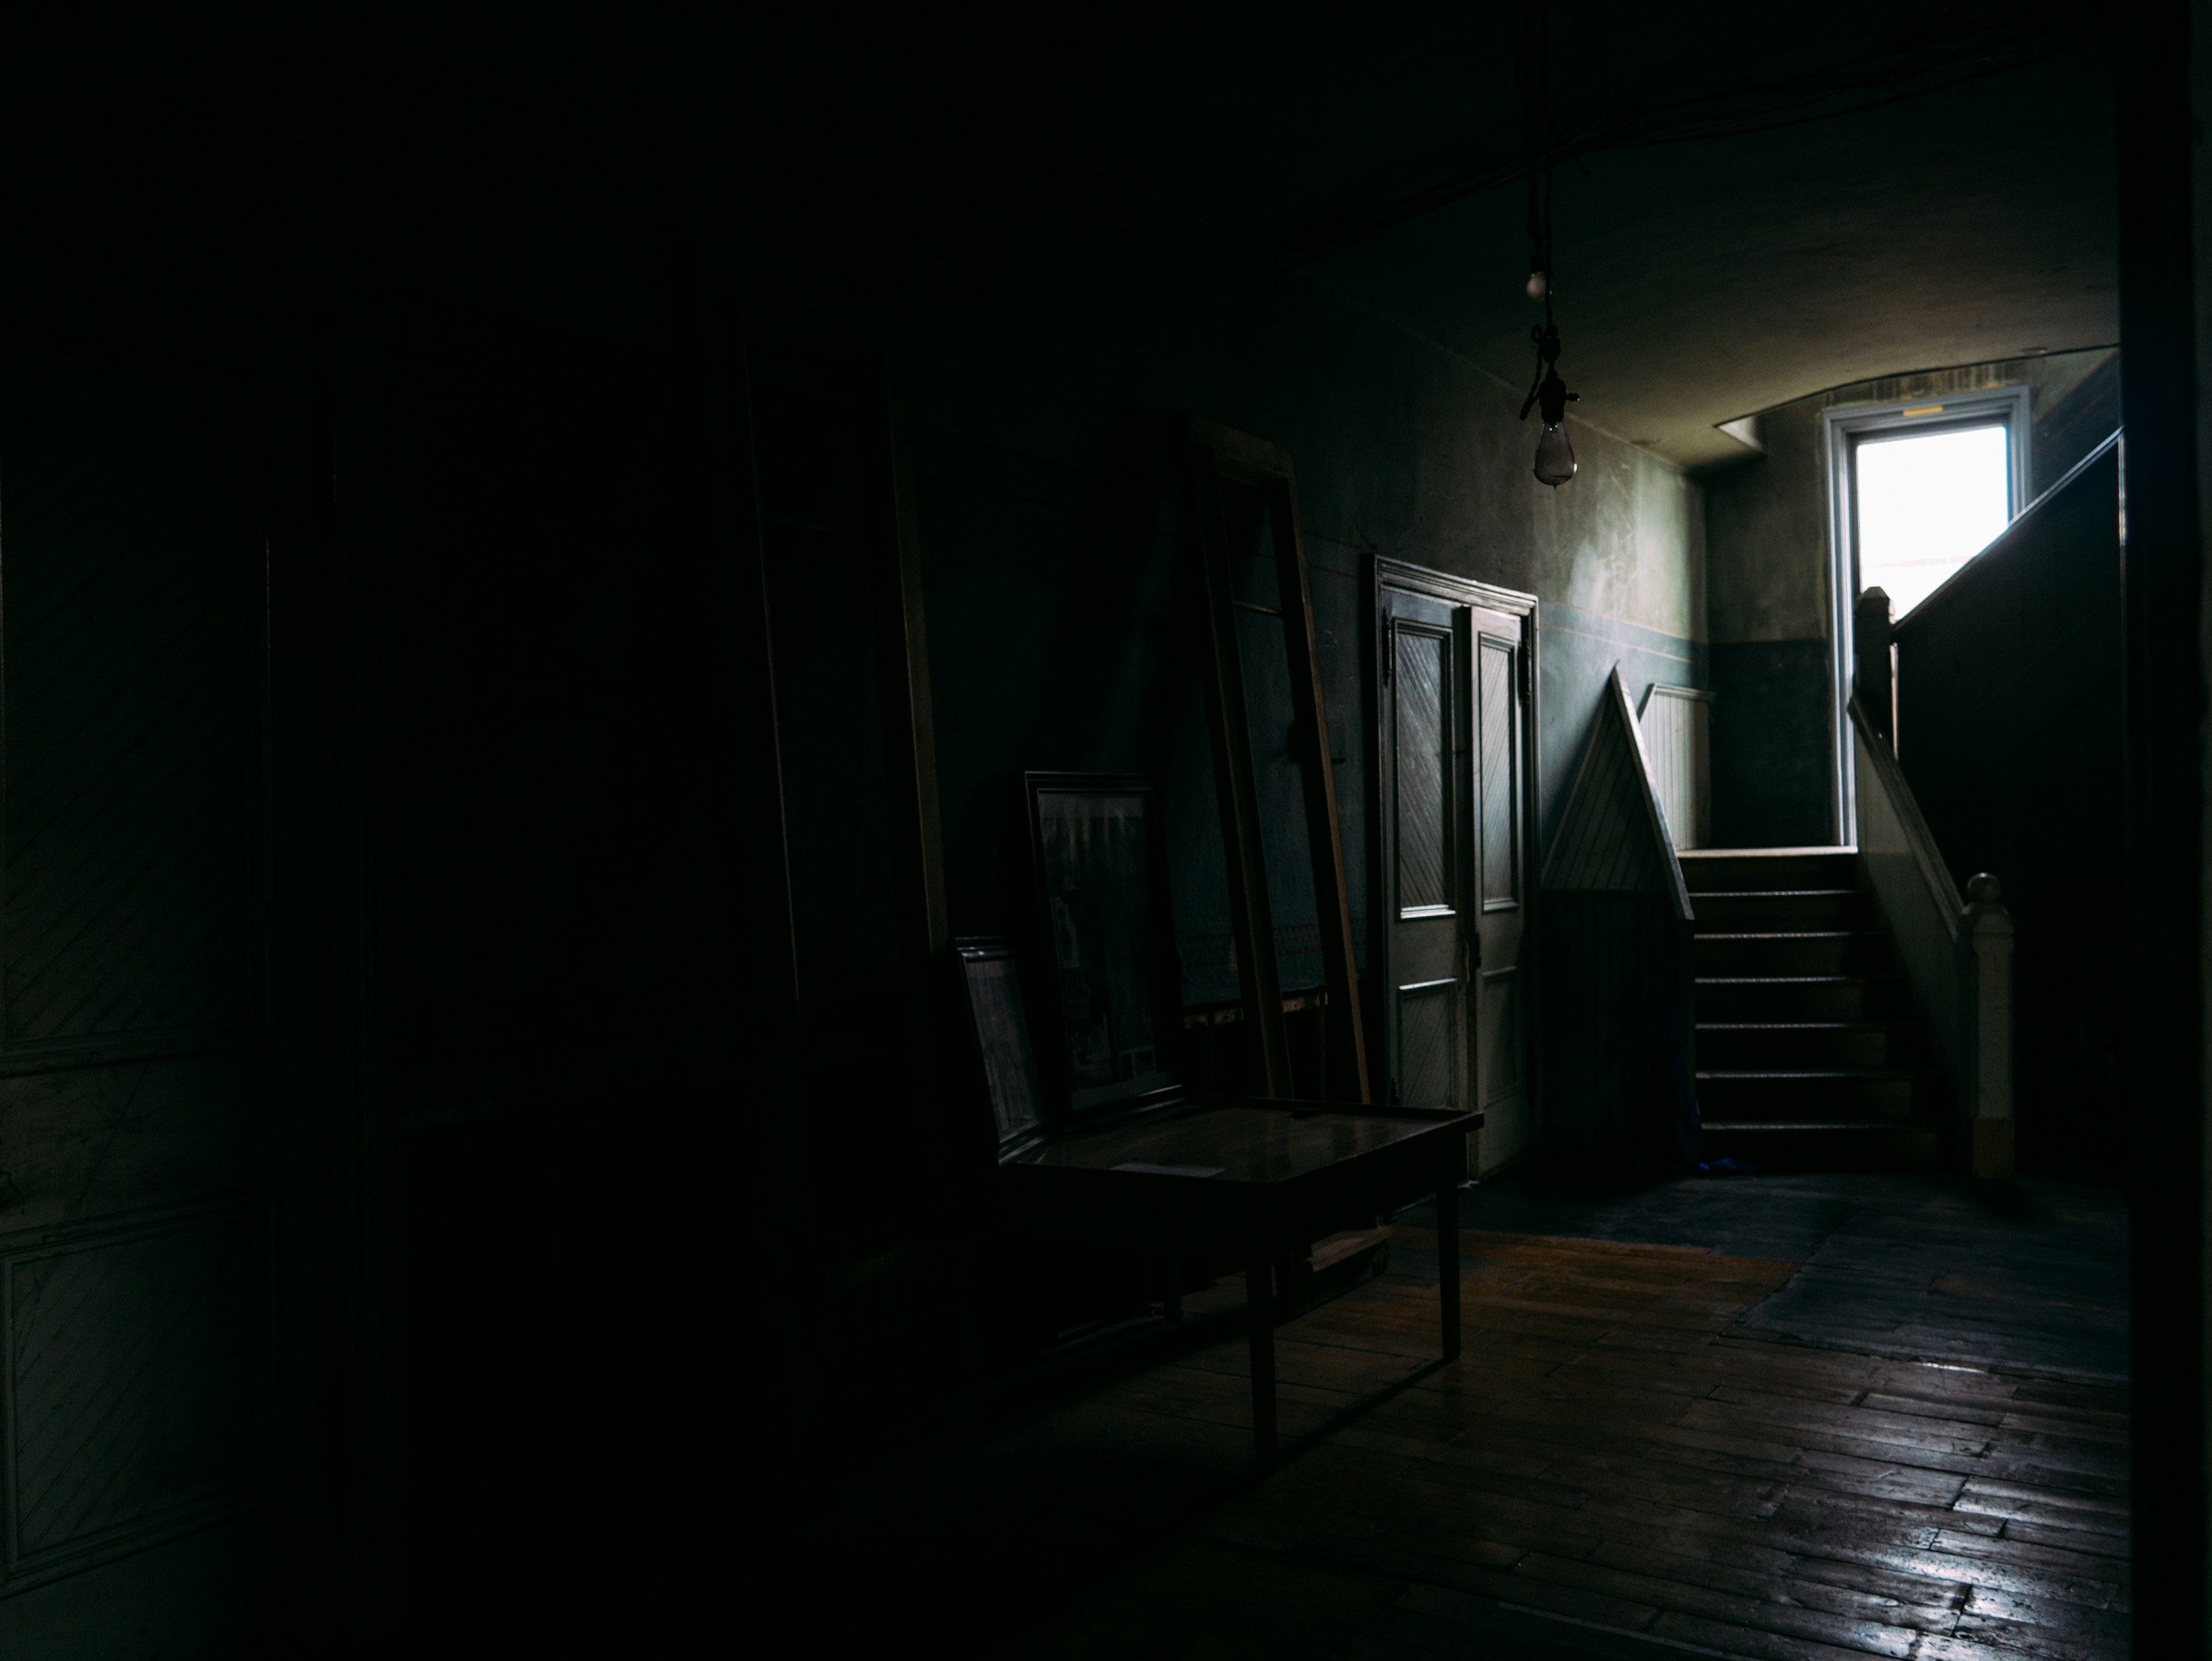 Une maison sans aucune lumière allumée | Source : Unsplash